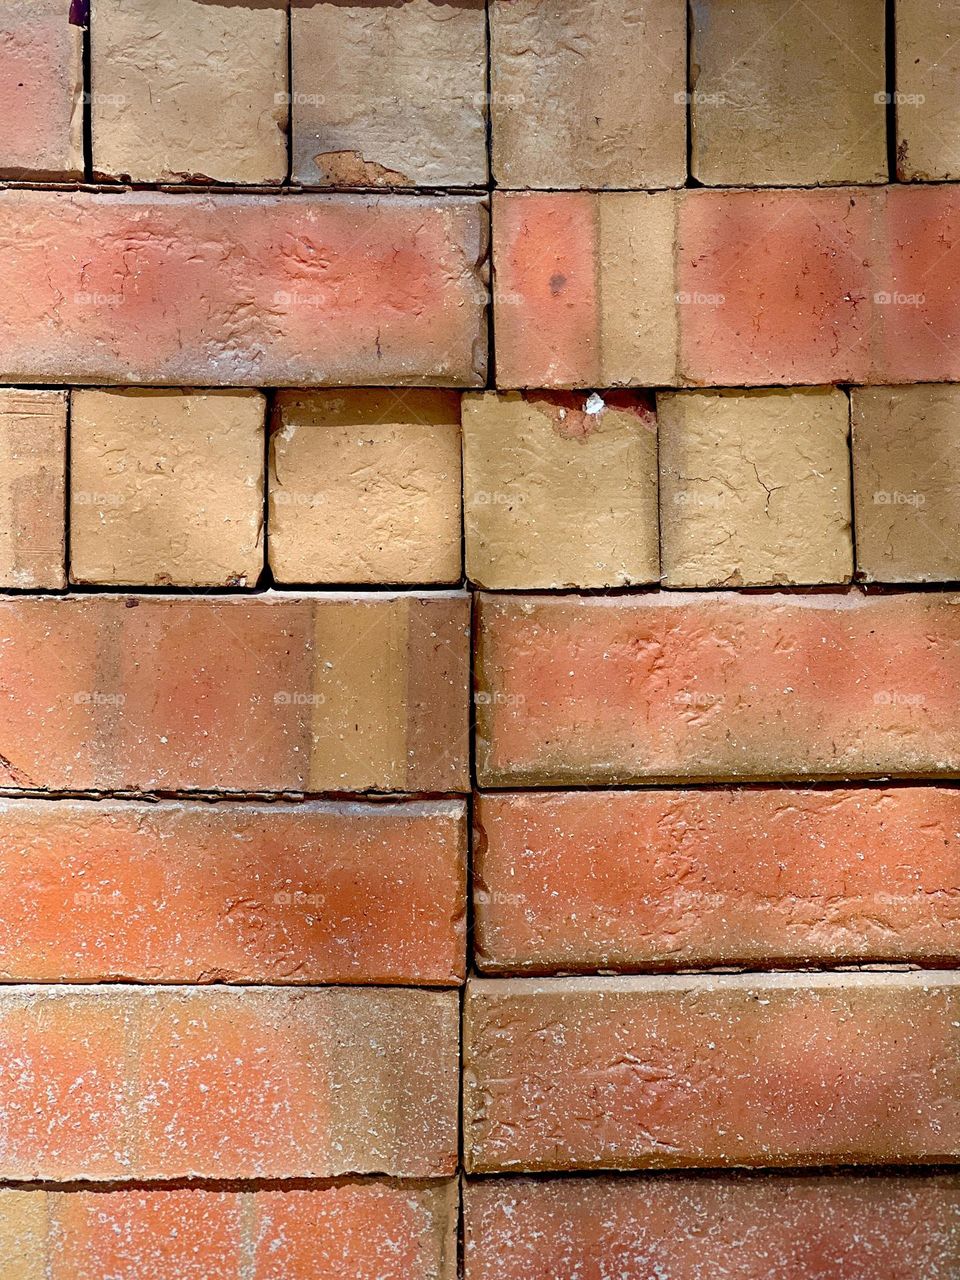 Full frame stack of red and ochre bricks